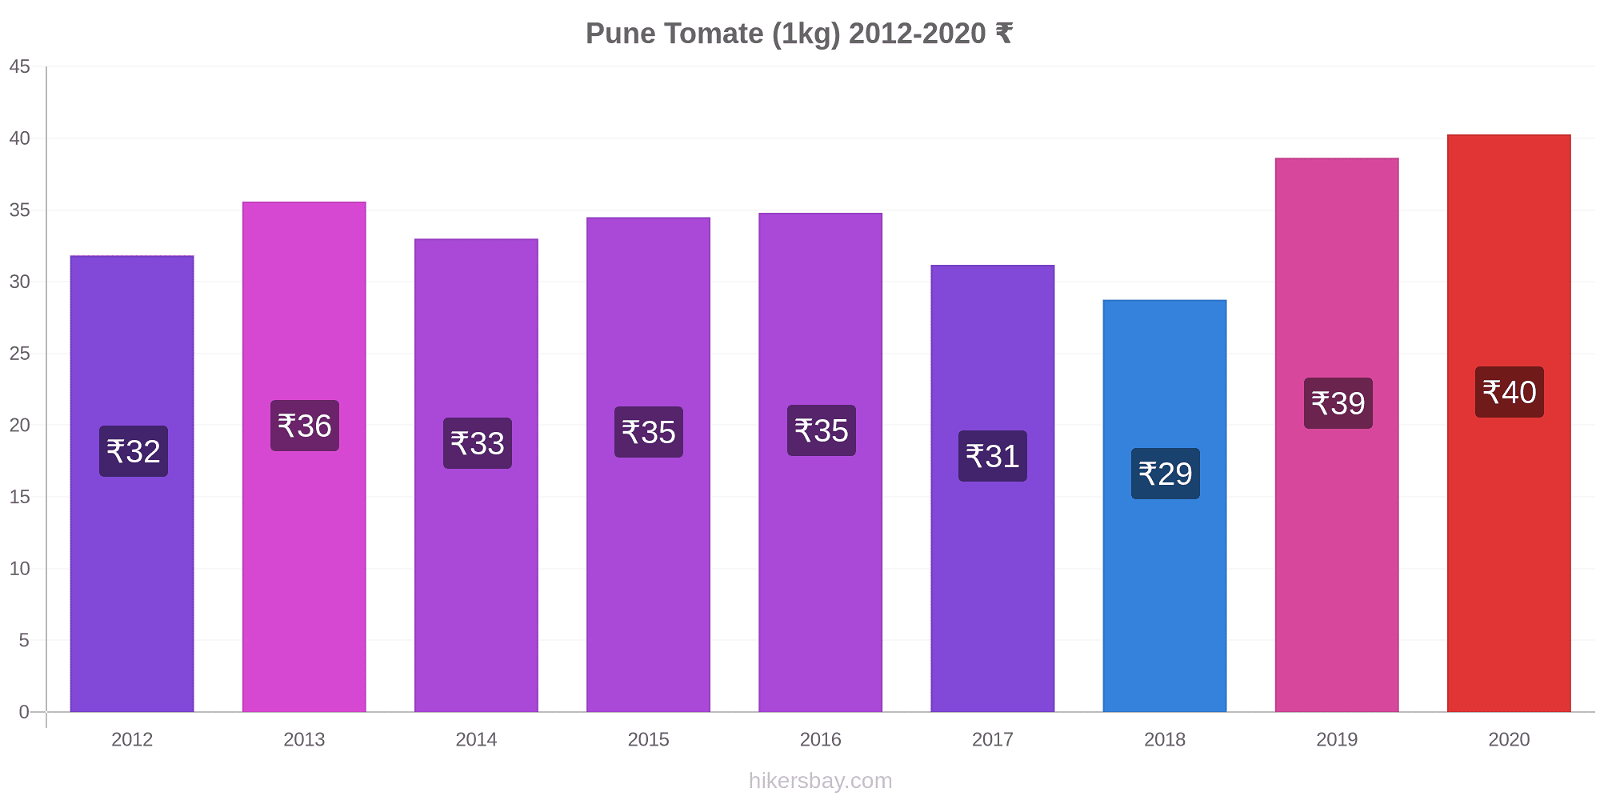 Pune cambios de precios Tomate (1kg) hikersbay.com